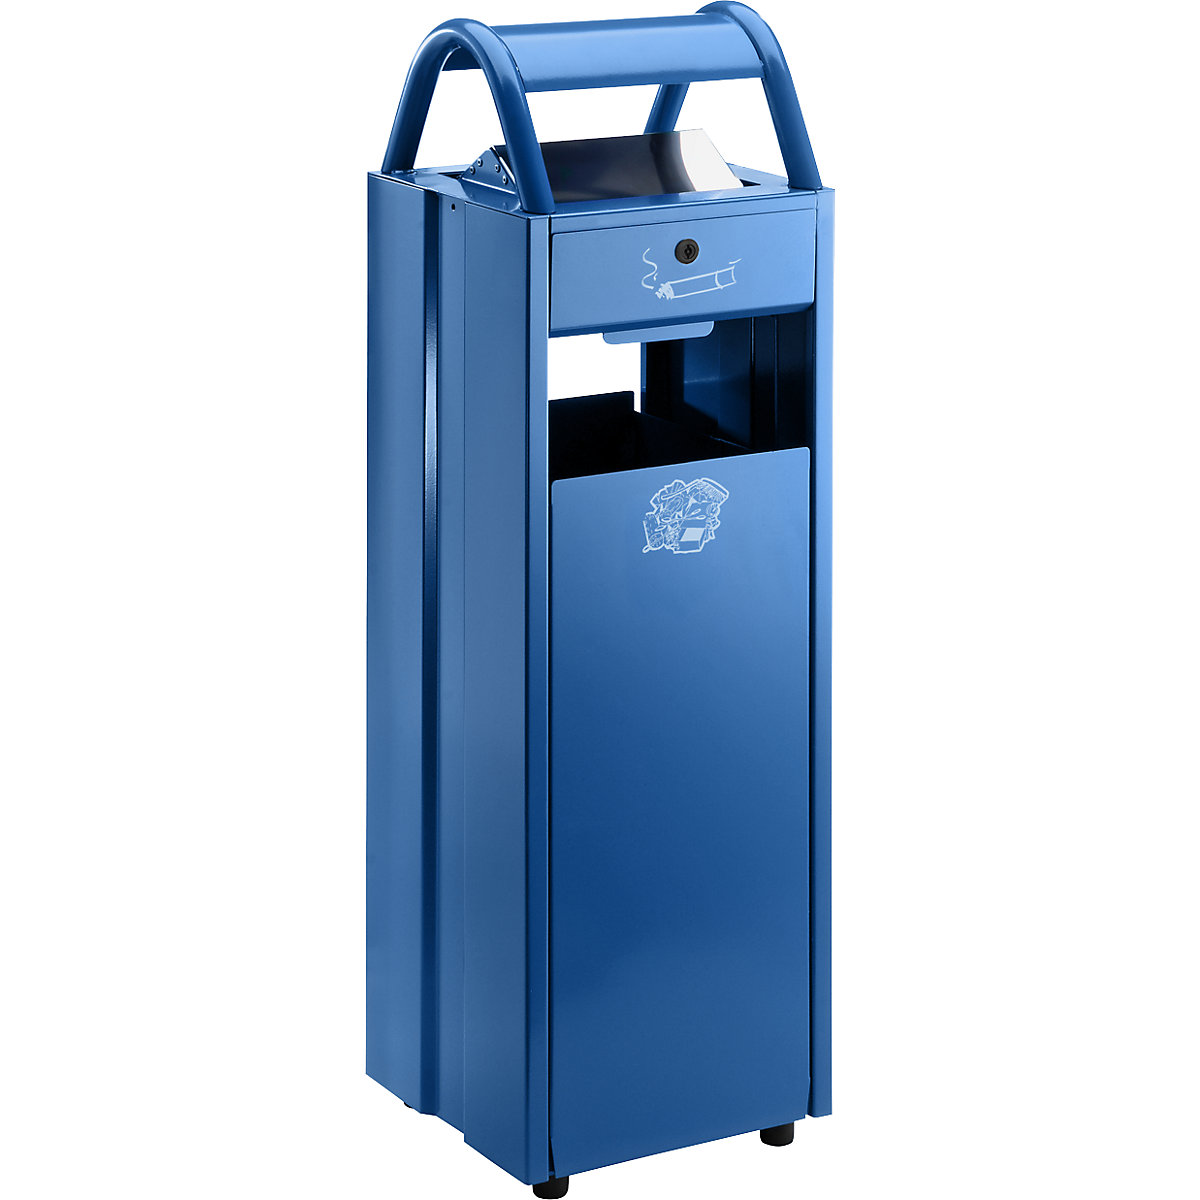 VAR – Sběrač odpadů s popelníkem a ochrannou stříškou proti dešti, objem 35 l, š x v x h 300 x 960 x 250 mm, modrá RAL 5010